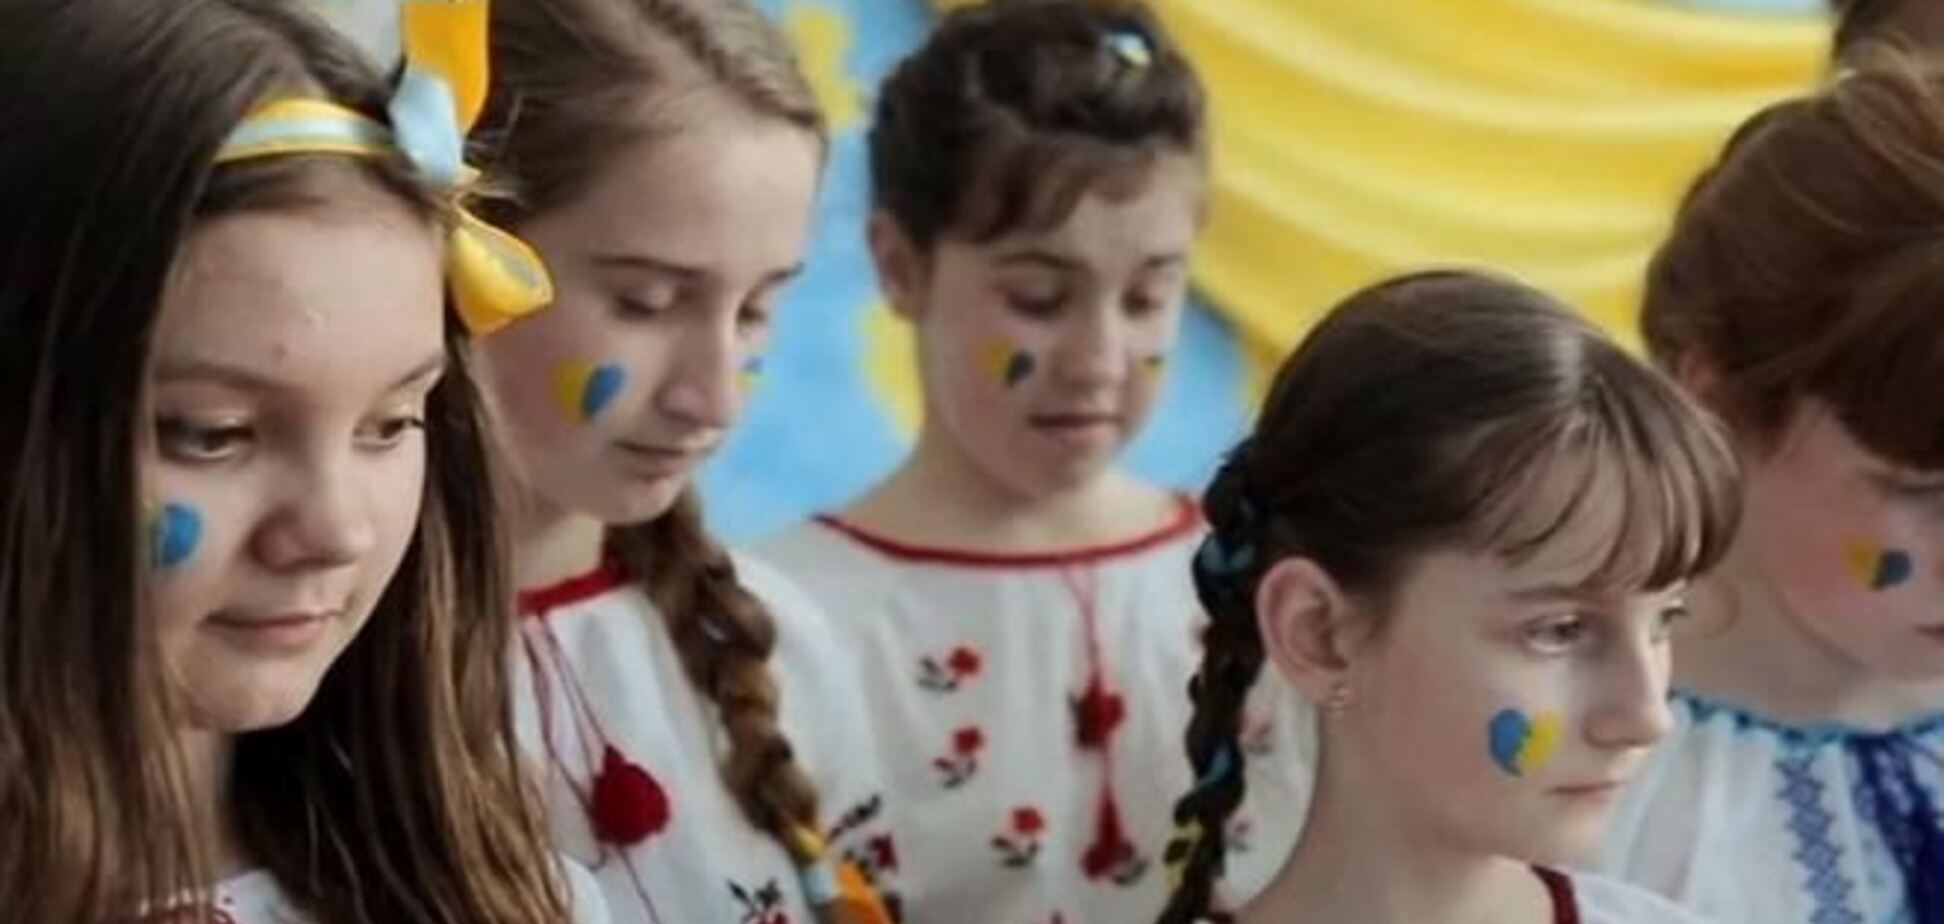 Діти Львівщини присвятили своє відео Єдиної України